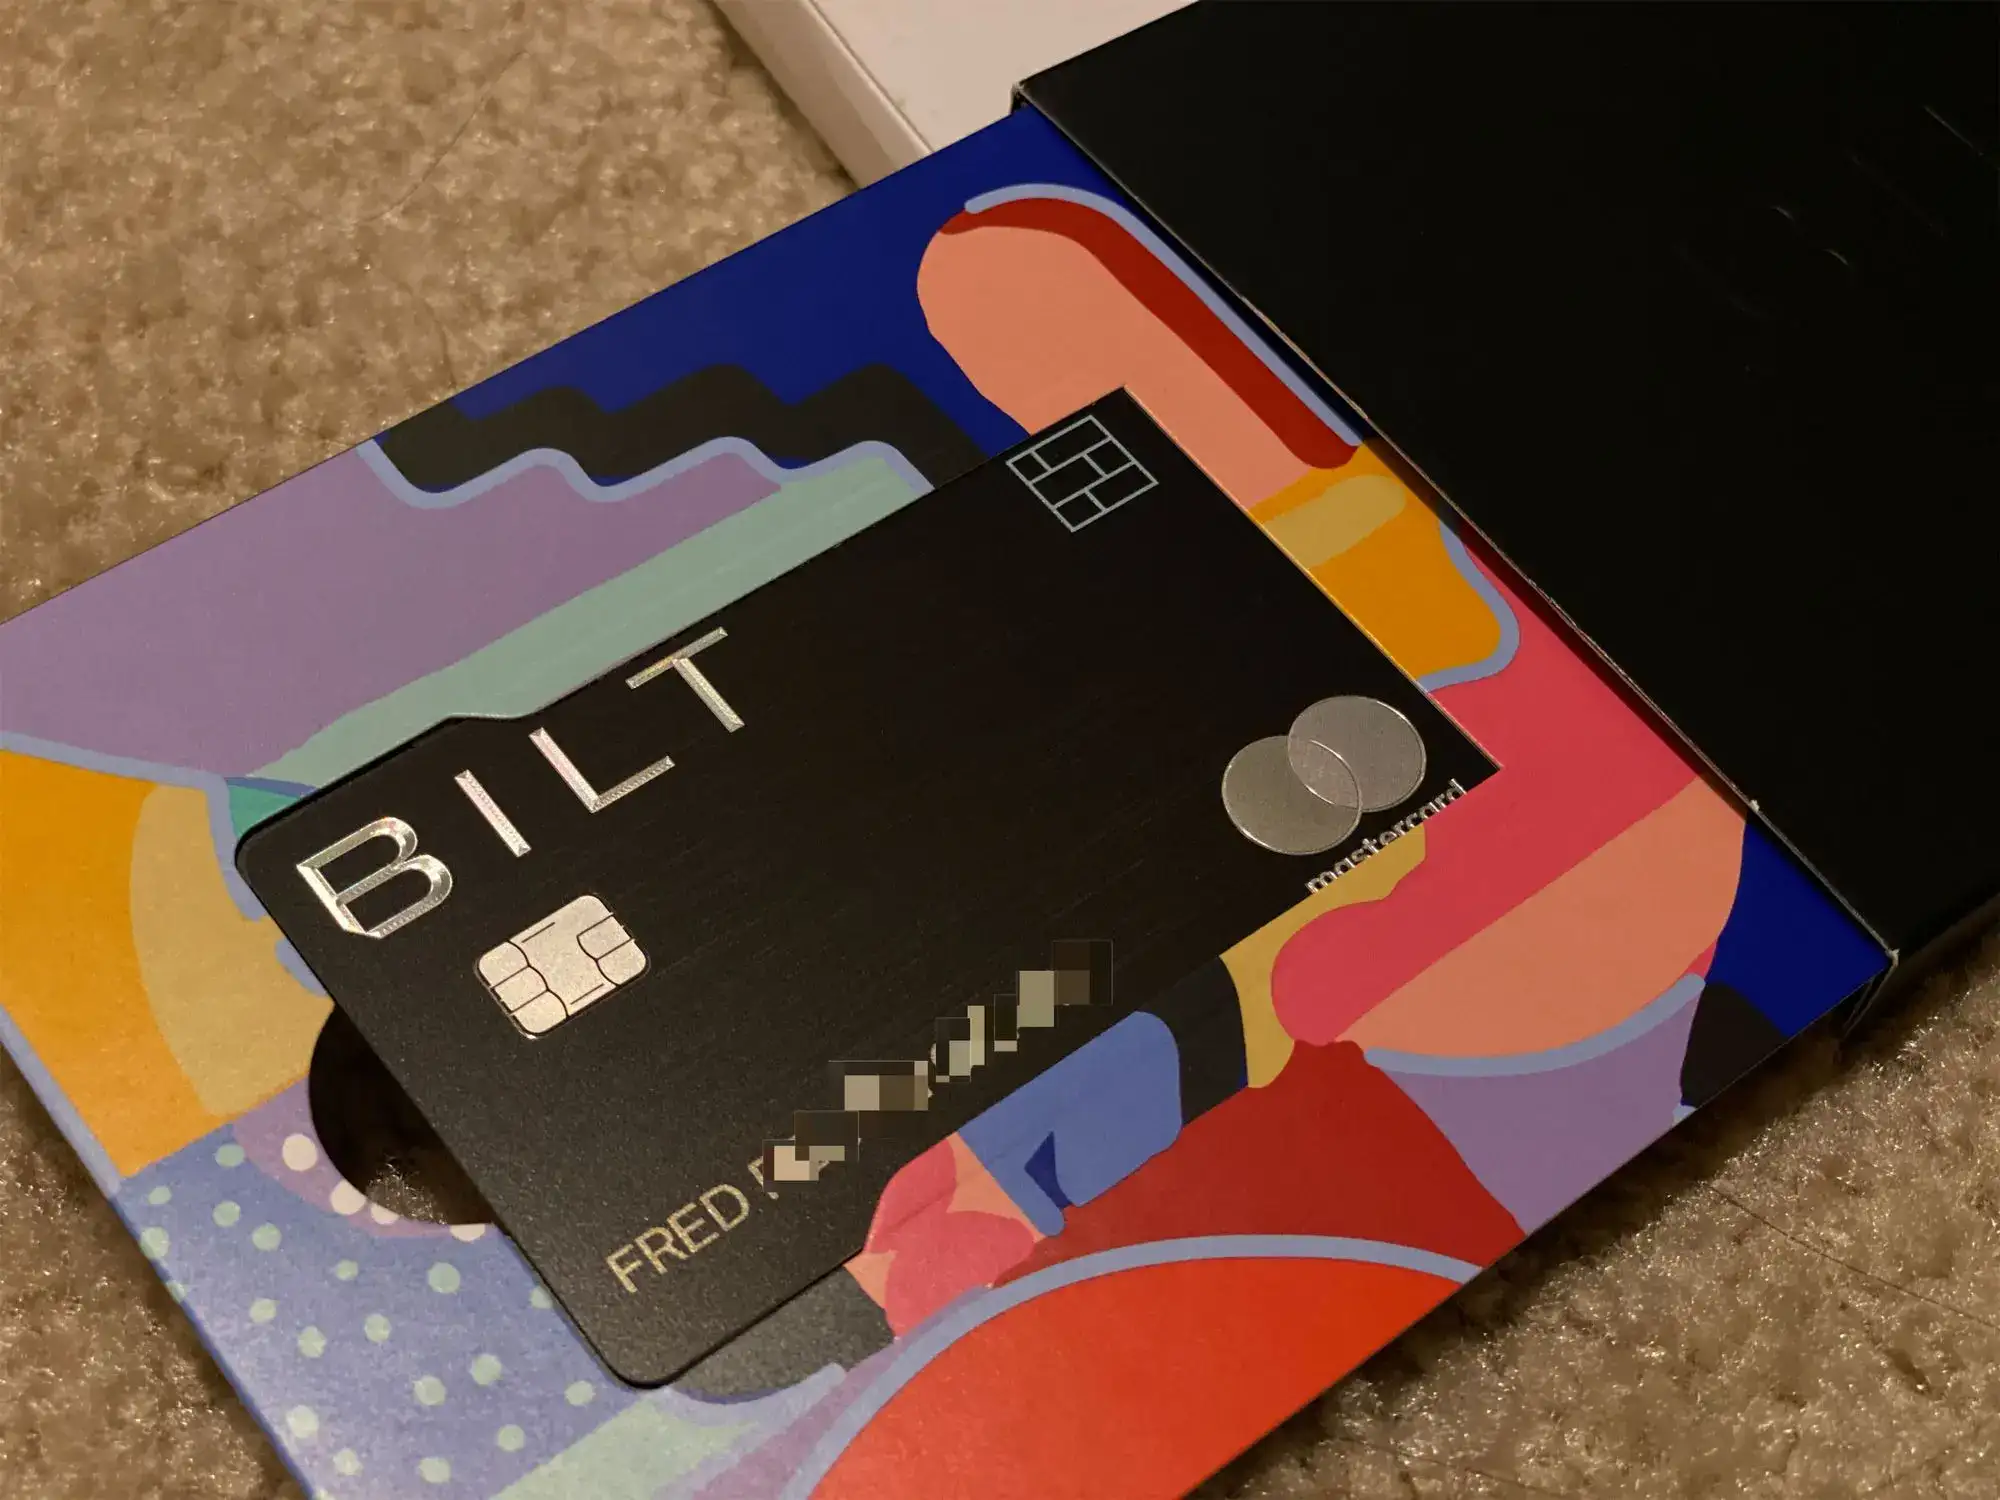 Bilt Card Review